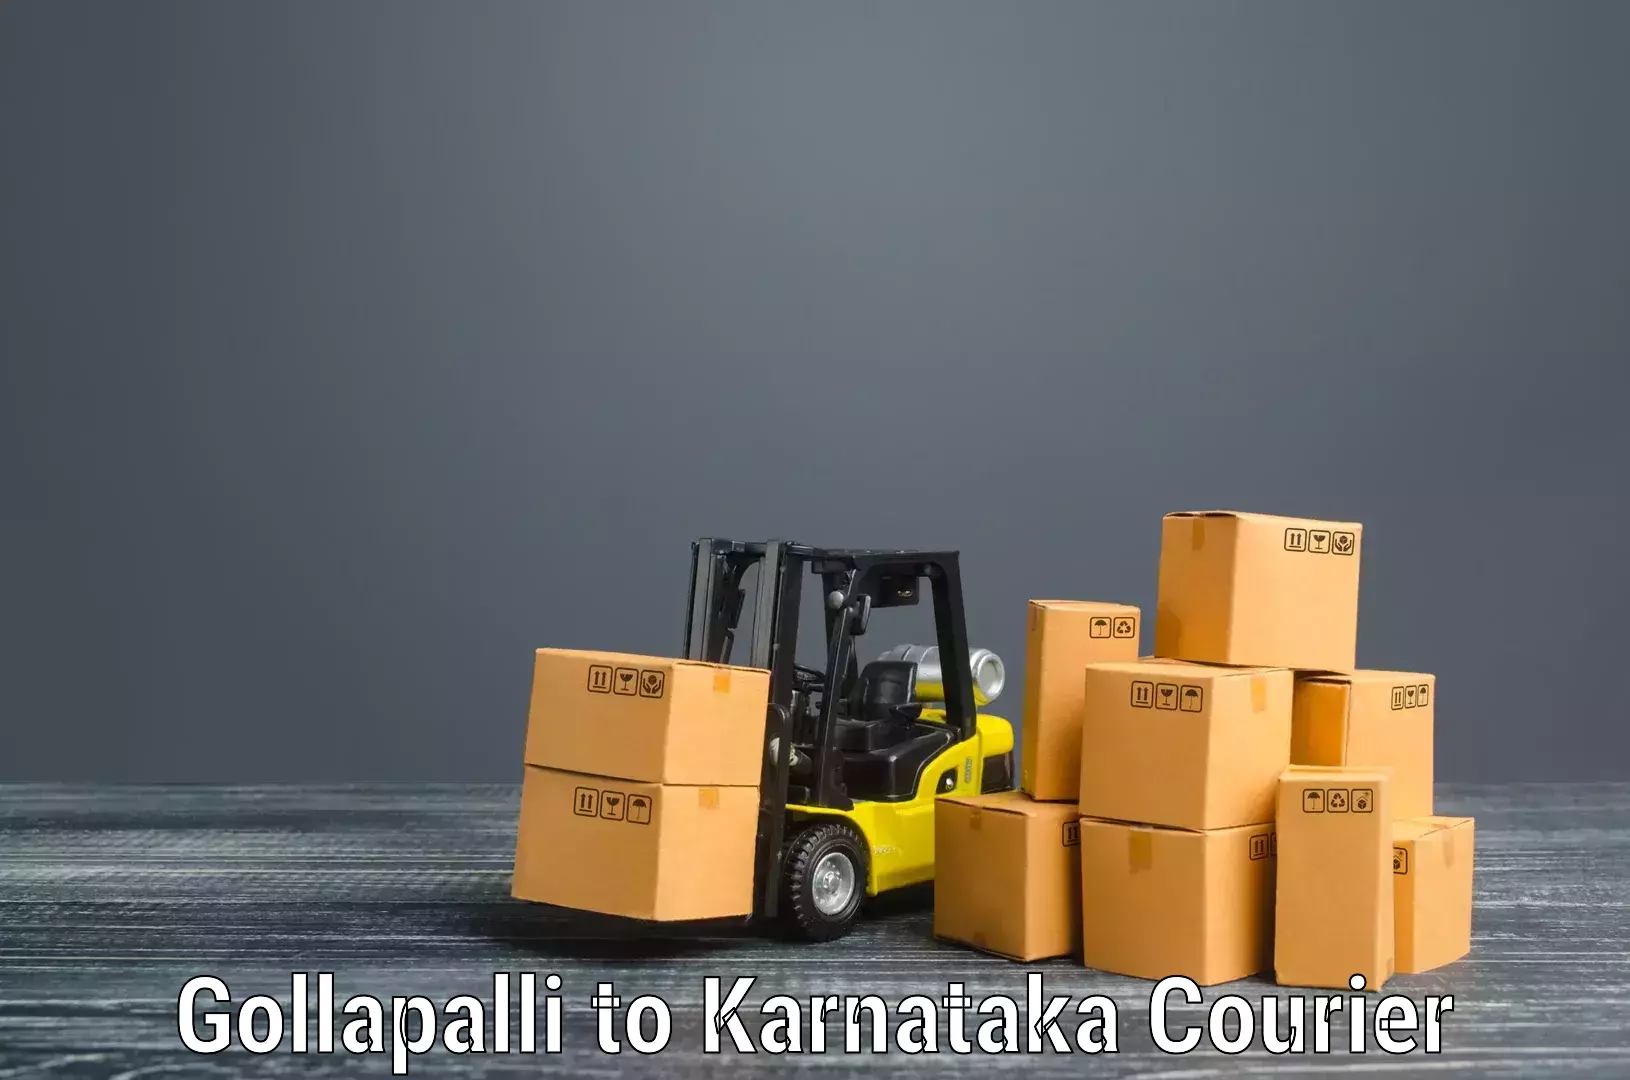 Household logistics services Gollapalli to Kalaburagi